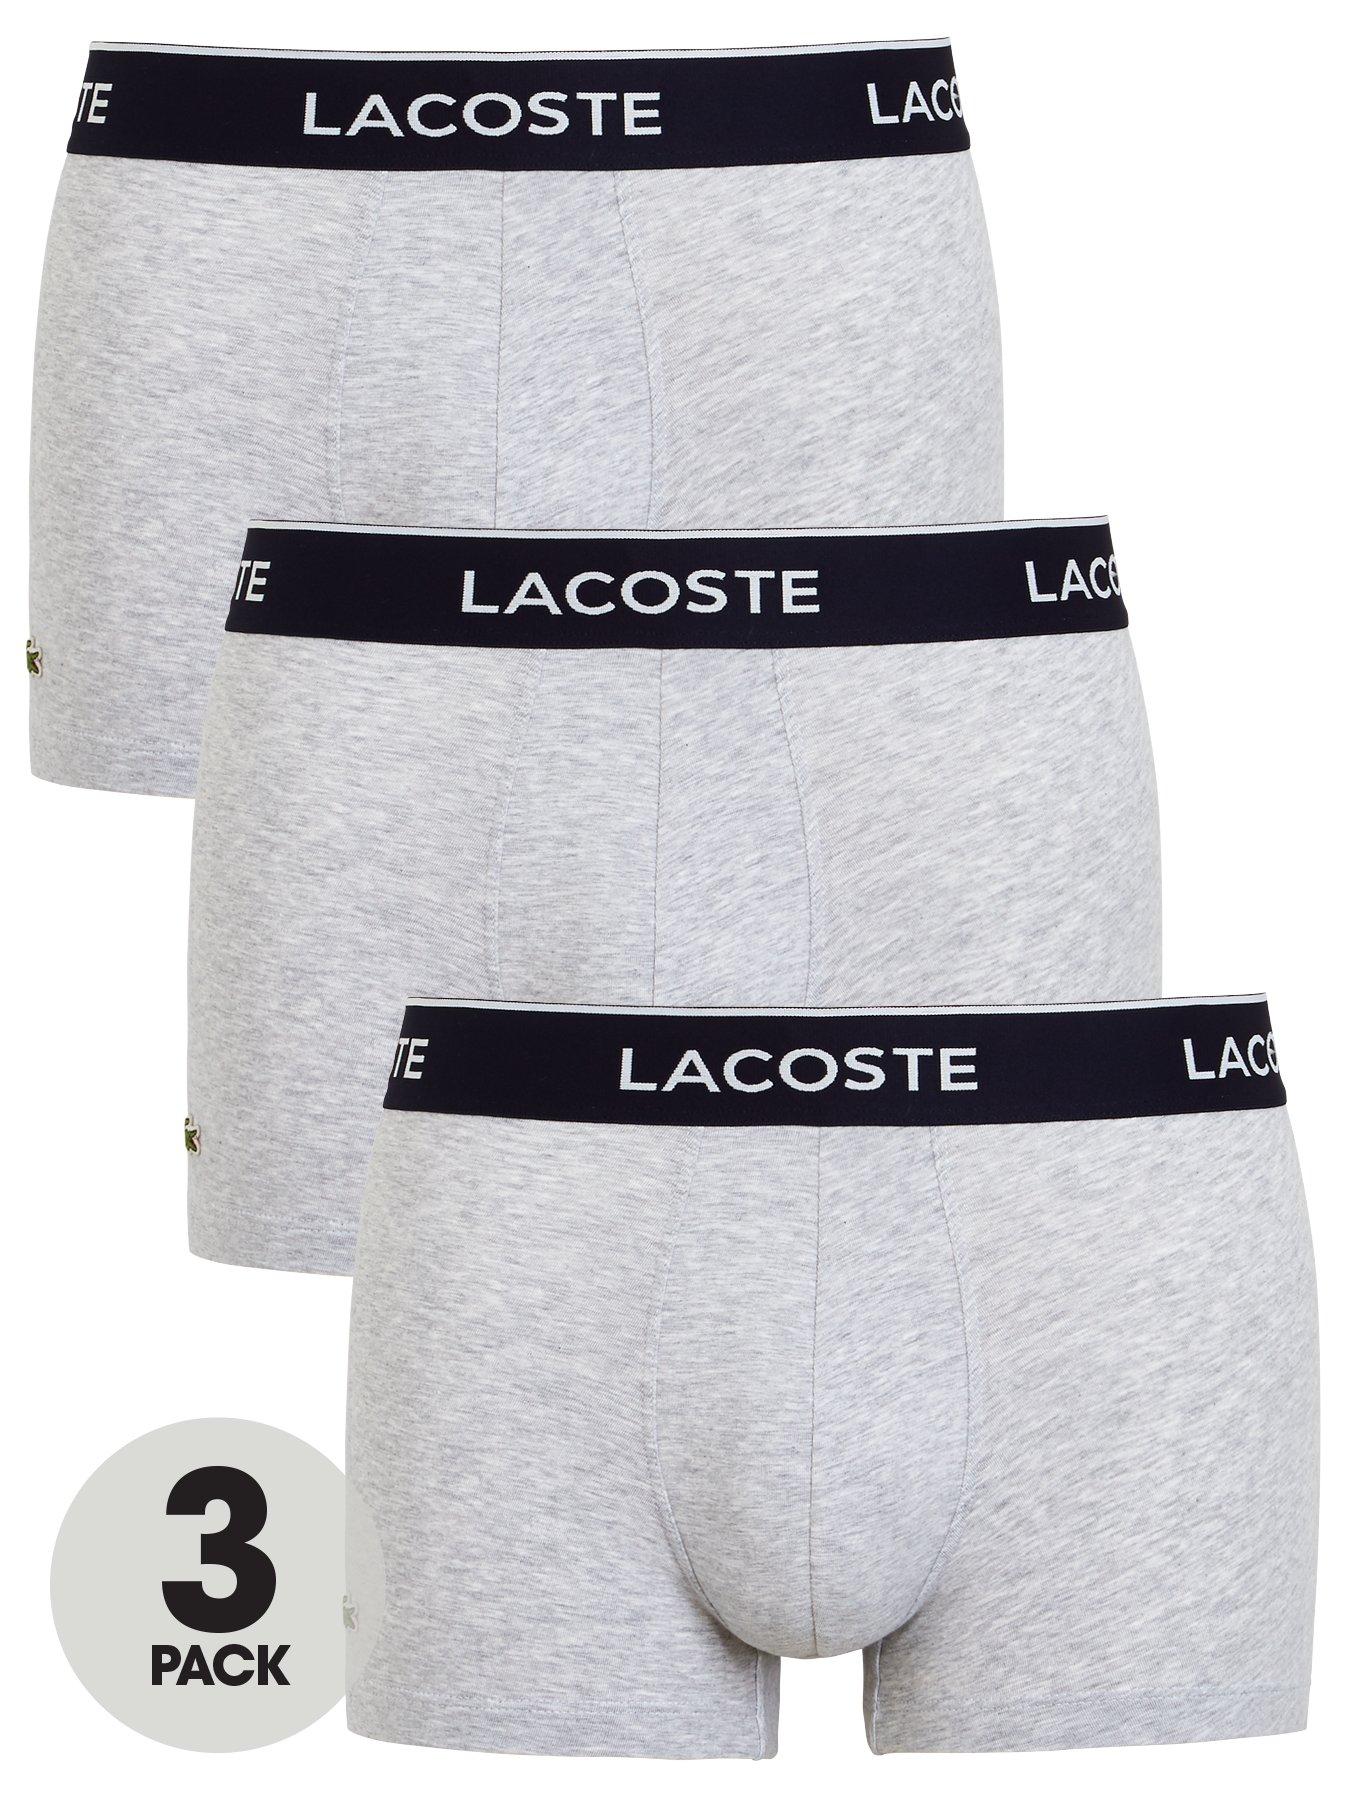 Lacoste, Underwear & Socks